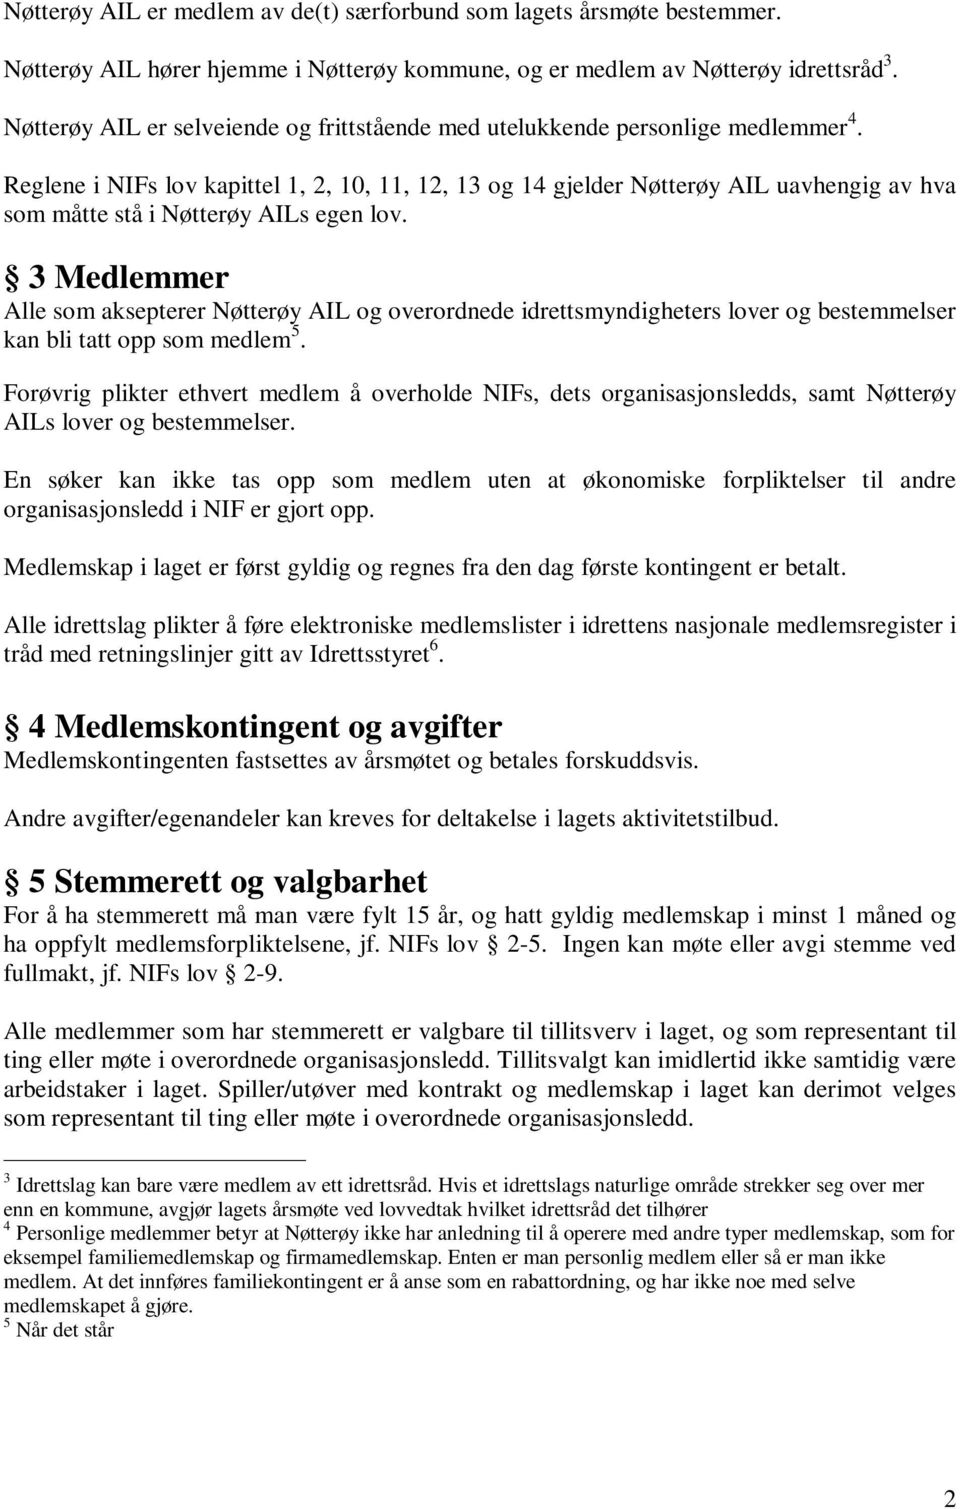 Reglene i NIFs lov kapittel 1, 2, 10, 11, 12, 13 og 14 gjelder Nøtterøy AIL uavhengig av hva som måtte stå i Nøtterøy AILs egen lov.